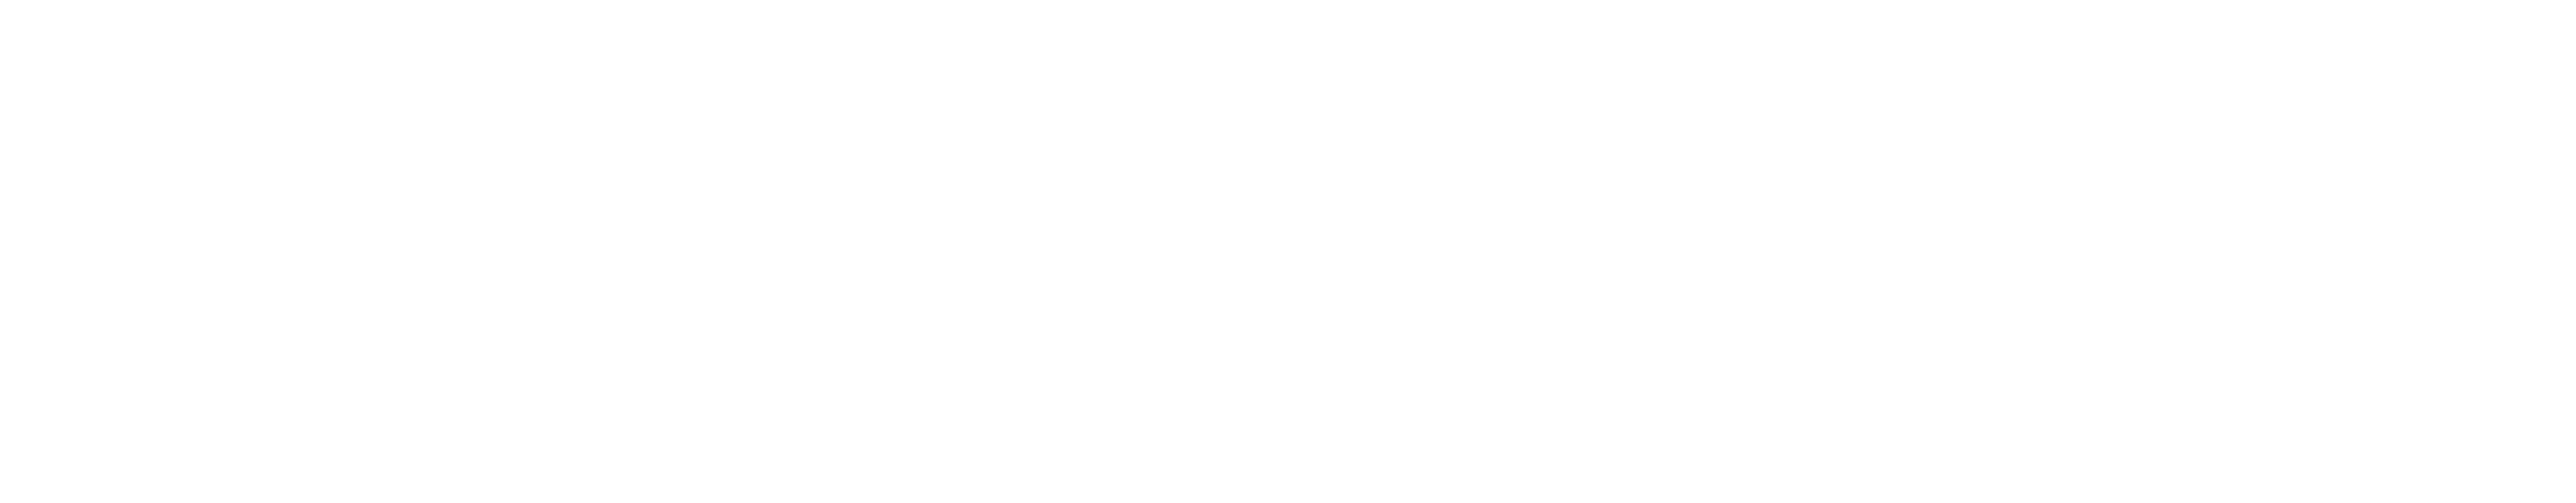 Agentur Schwarzfischer Logo 1 weiß